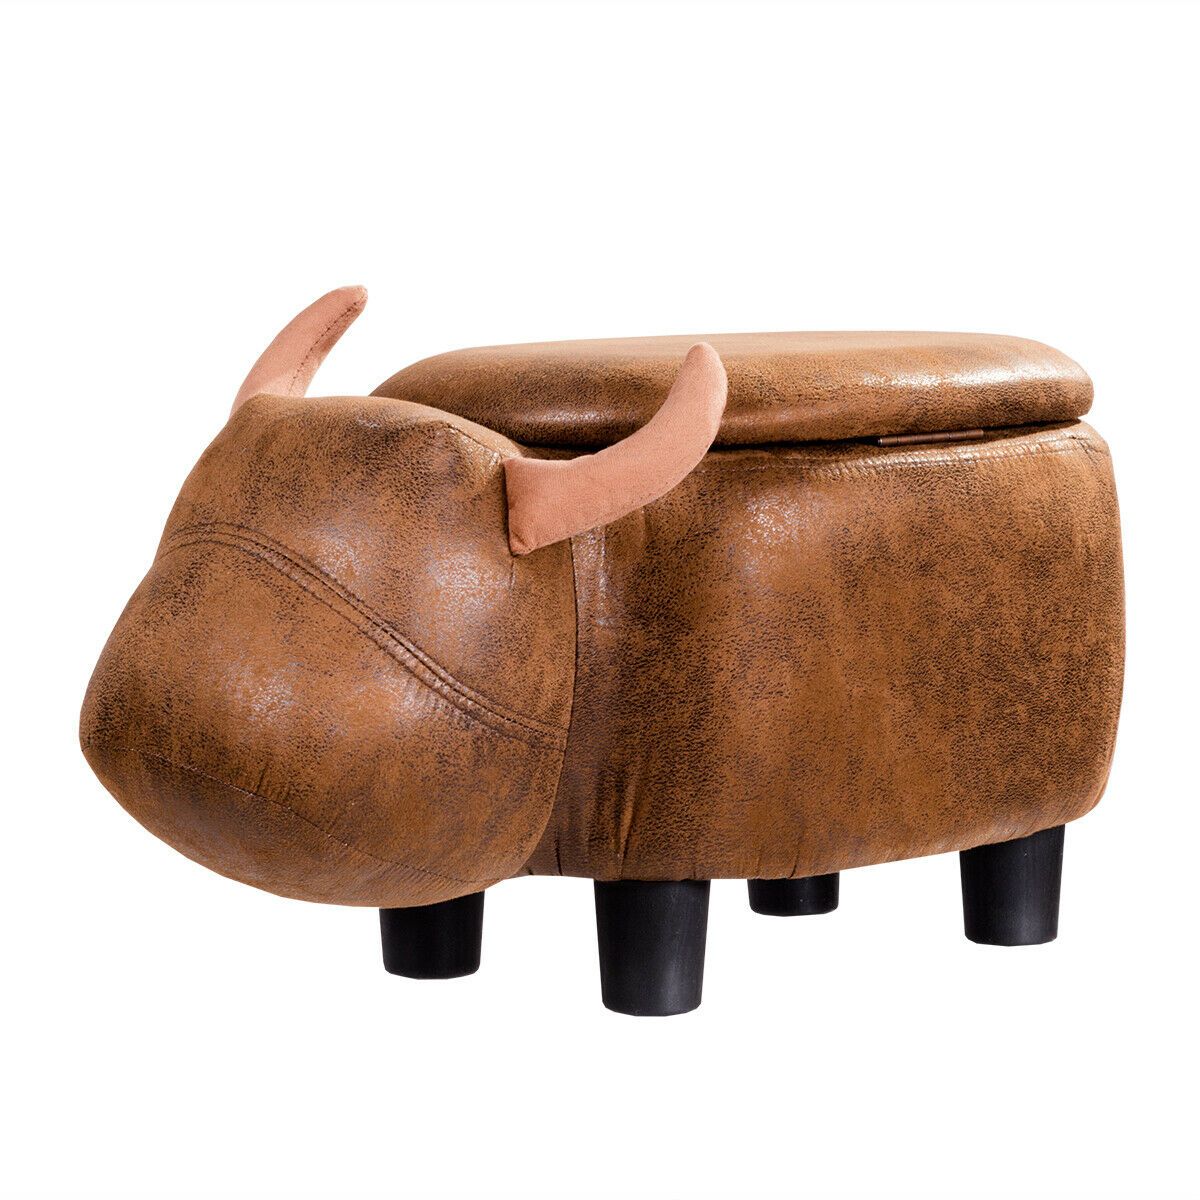 Upholstered Buffalo Storage Ottoman